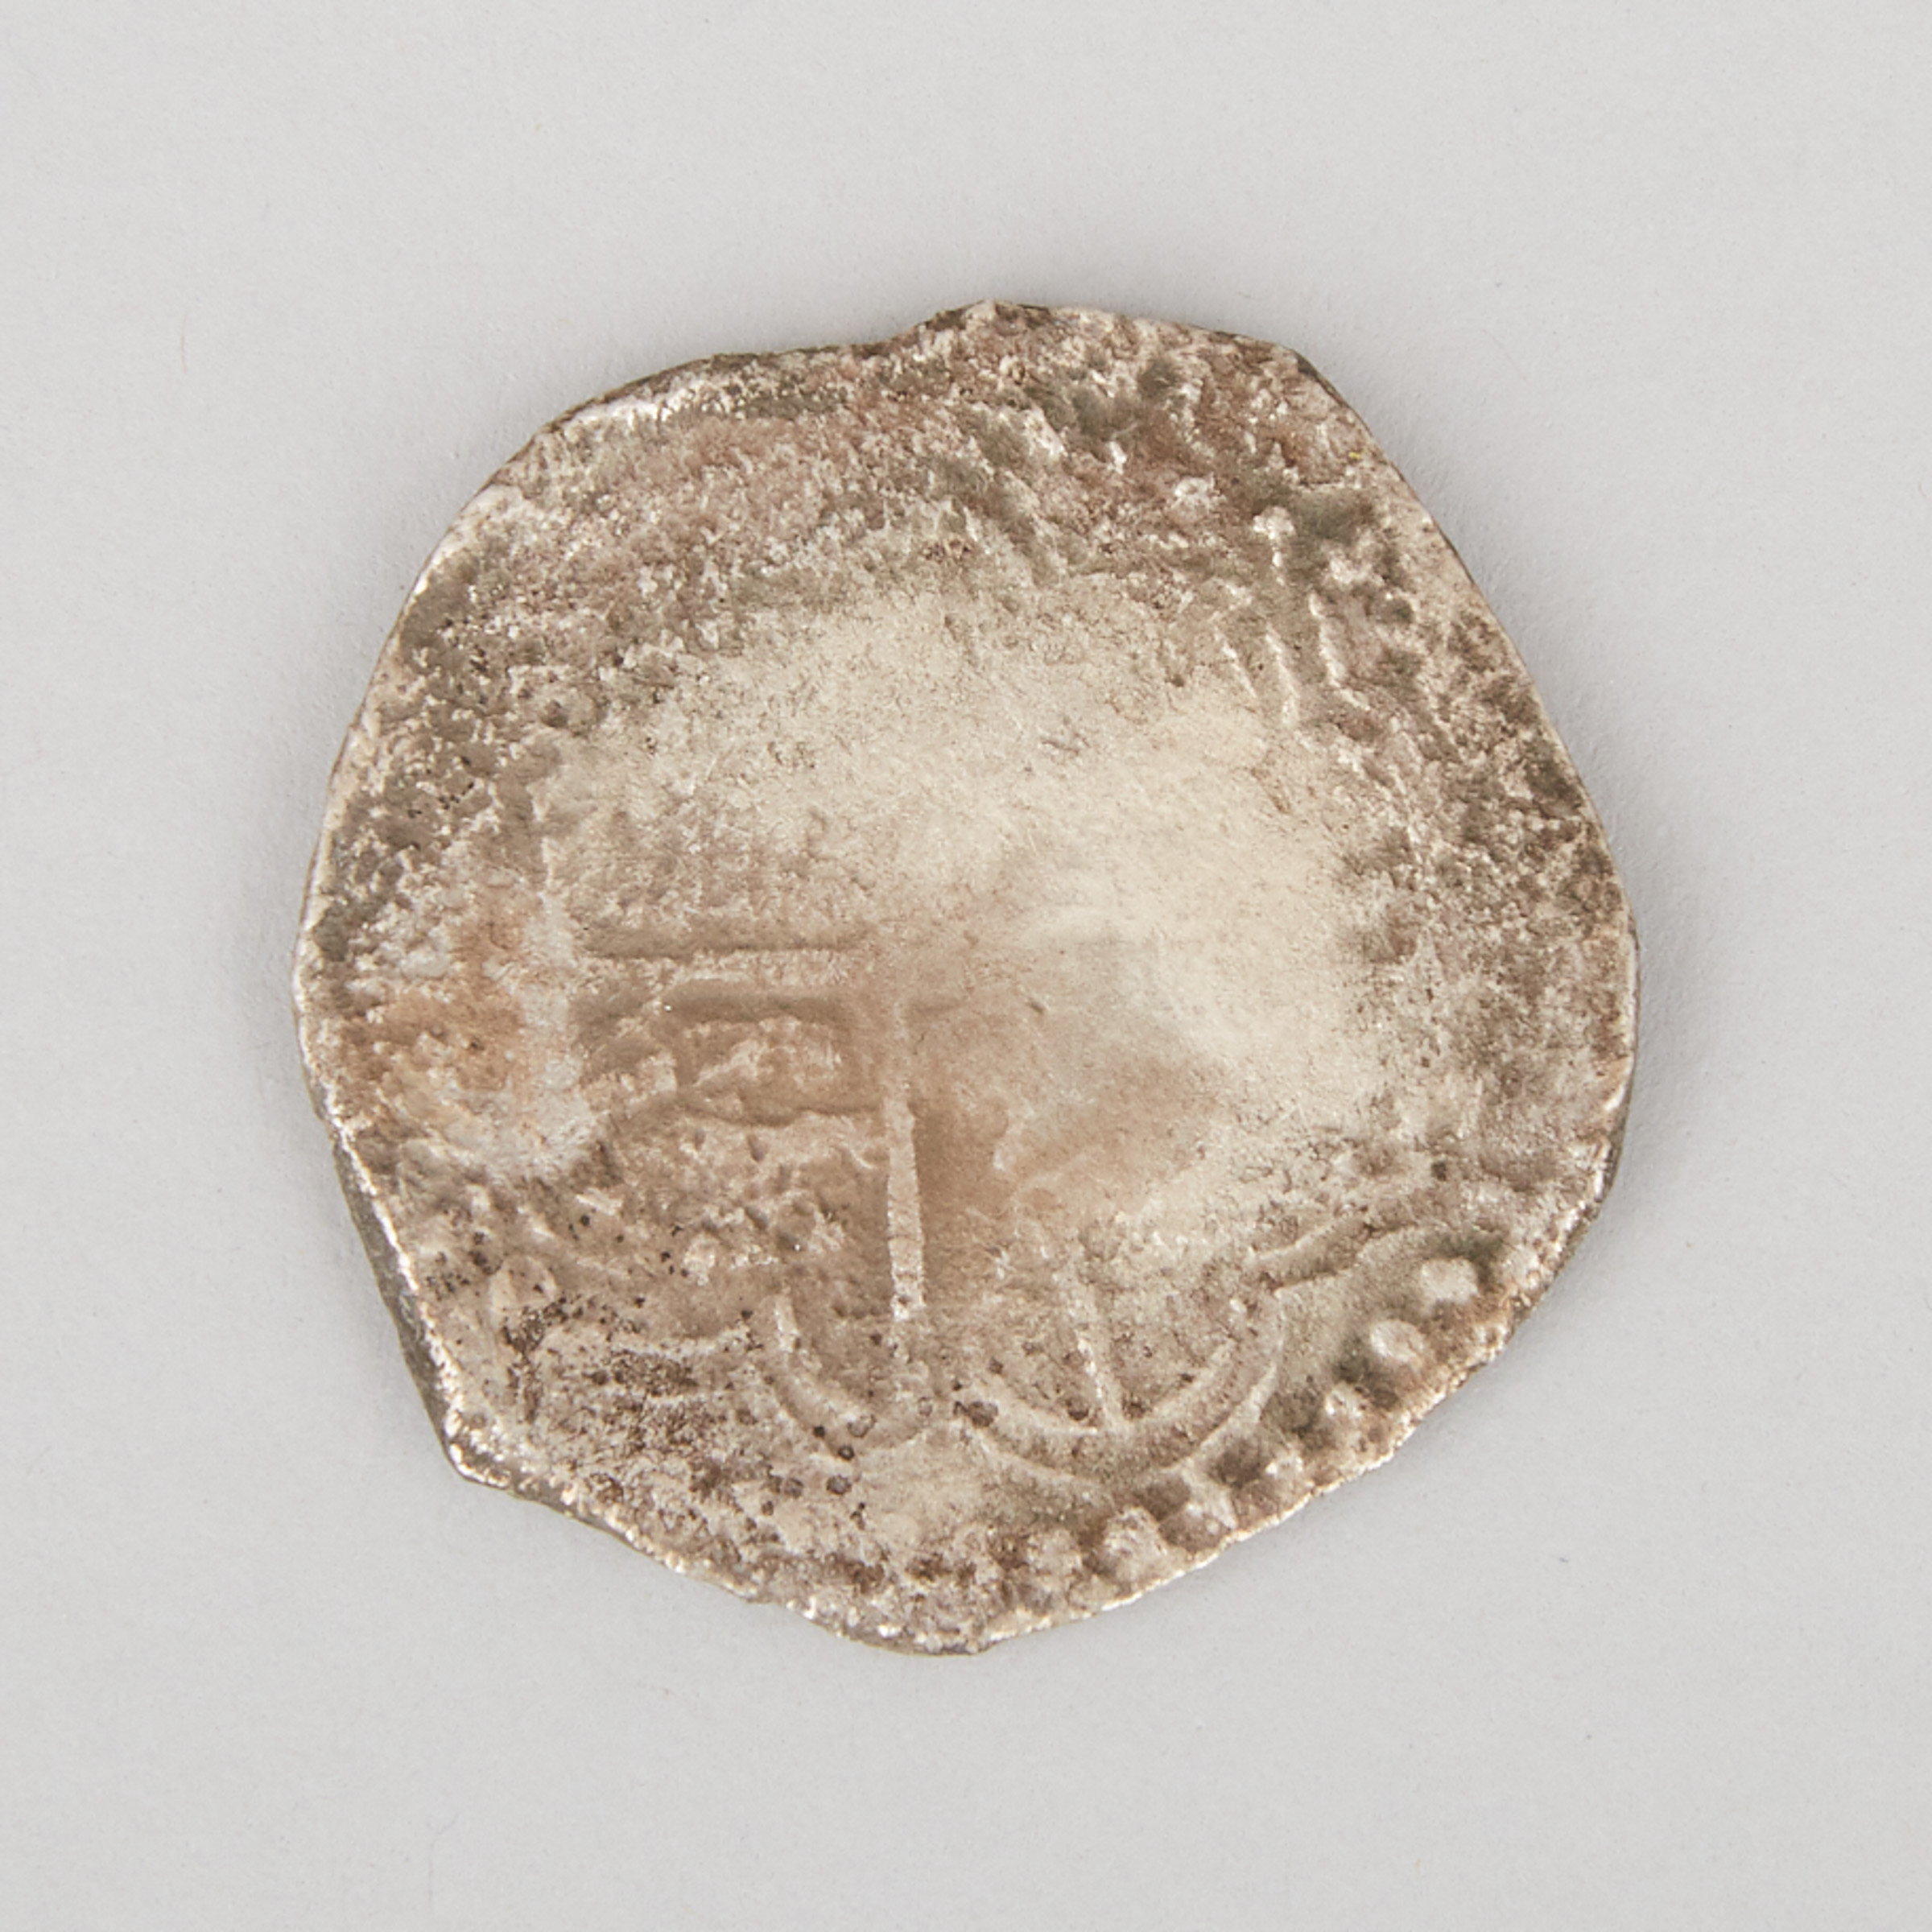 Atocha Shipwreck Spanish SIlver 8-Reale Coin, 1622